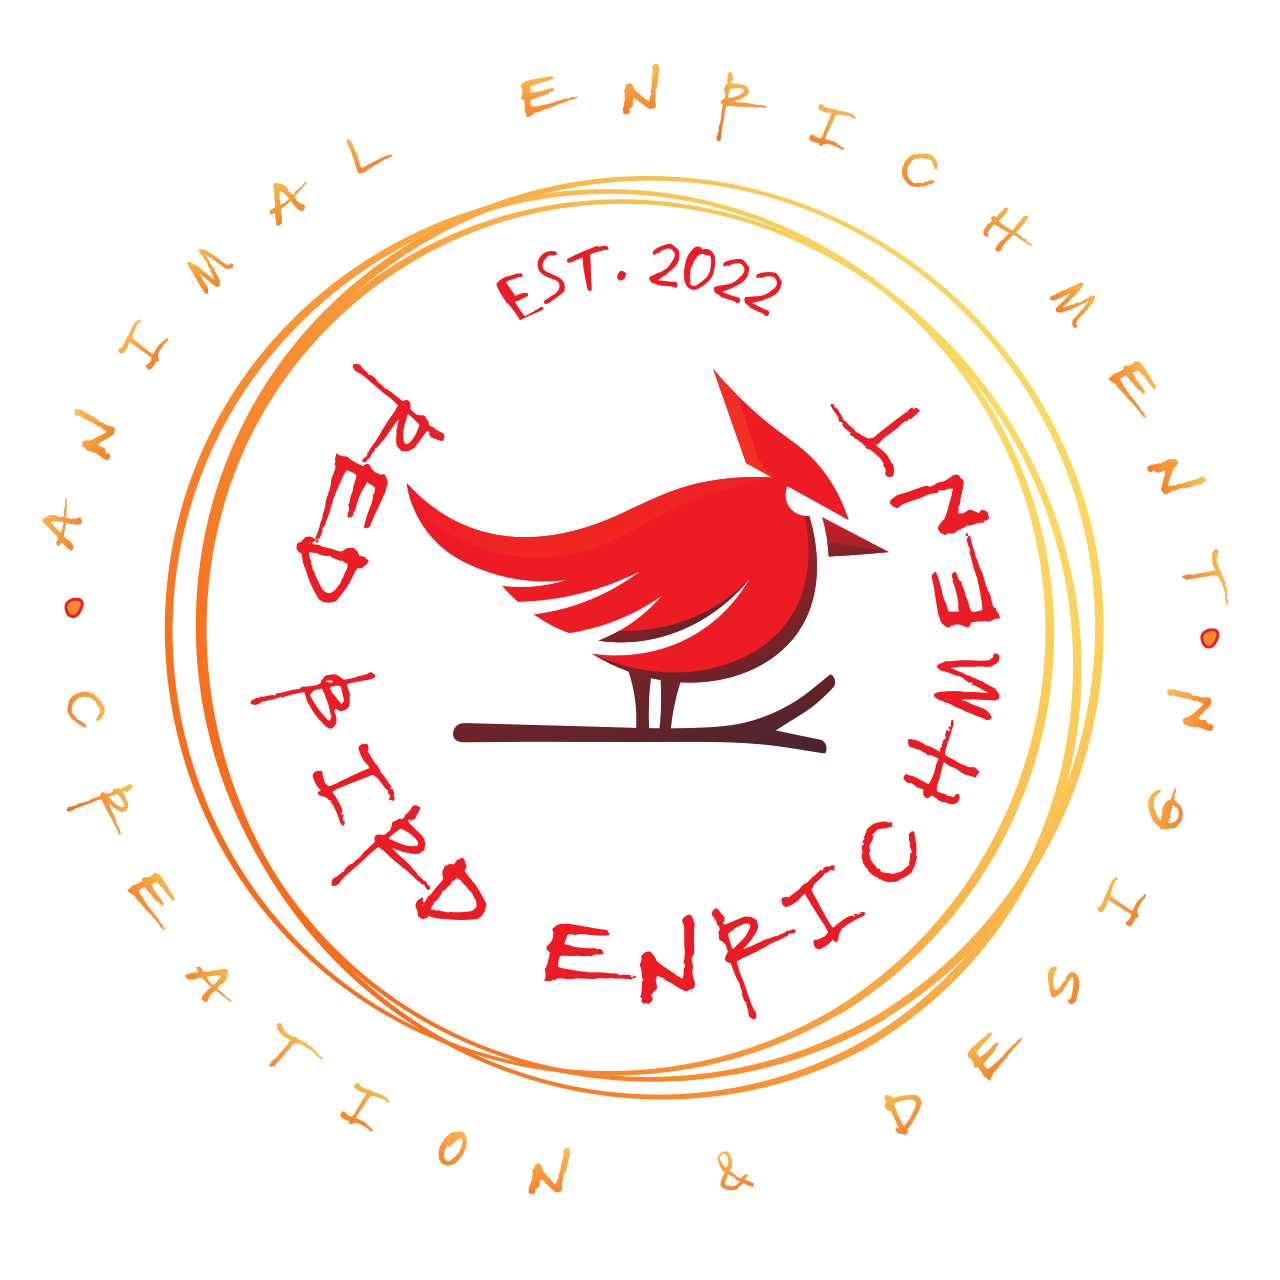  RED BIRD ENRICHMENT's logo